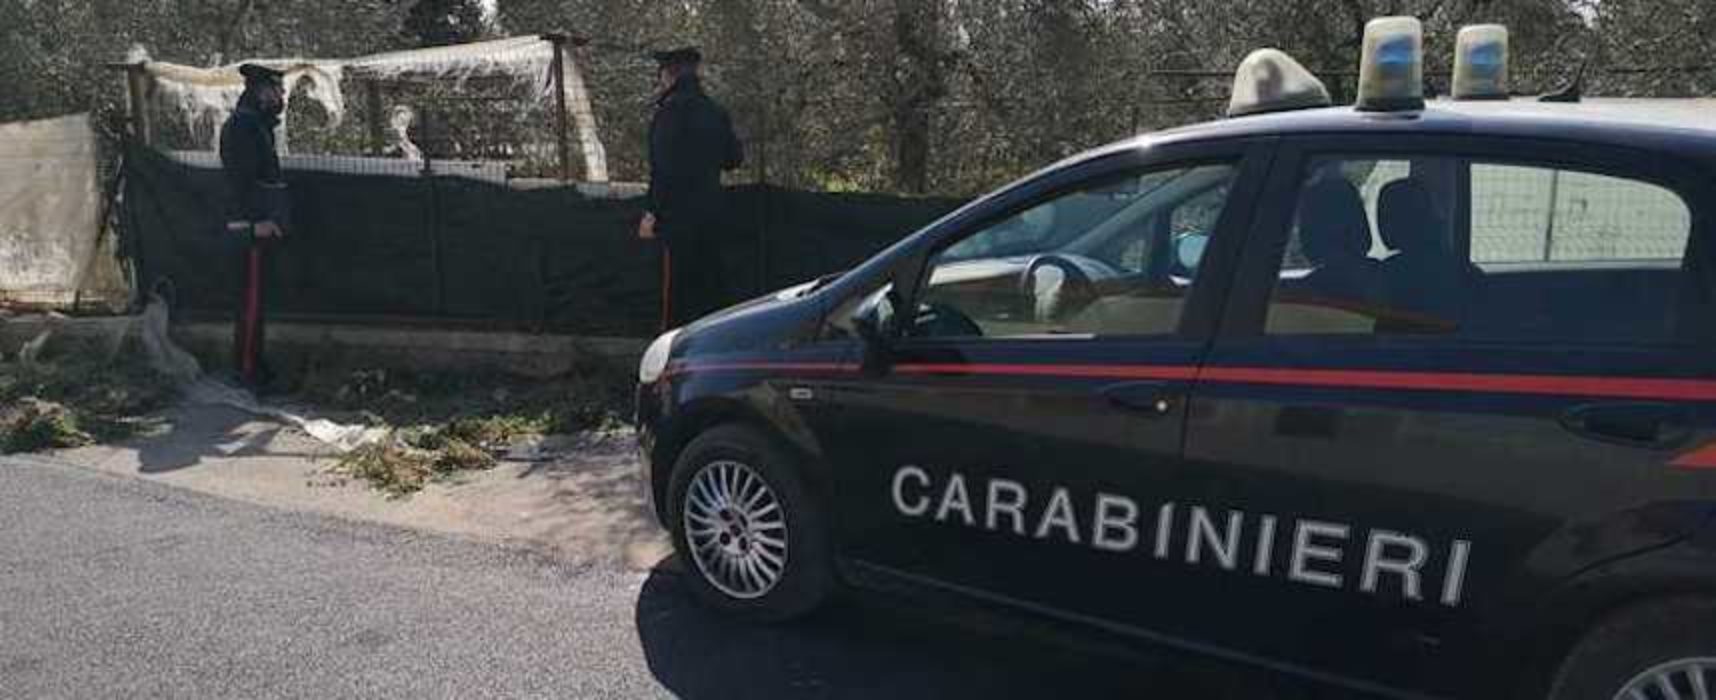 Breve inseguimento in via Ruvo: carabinieri arrestano due ragazzi per spaccio